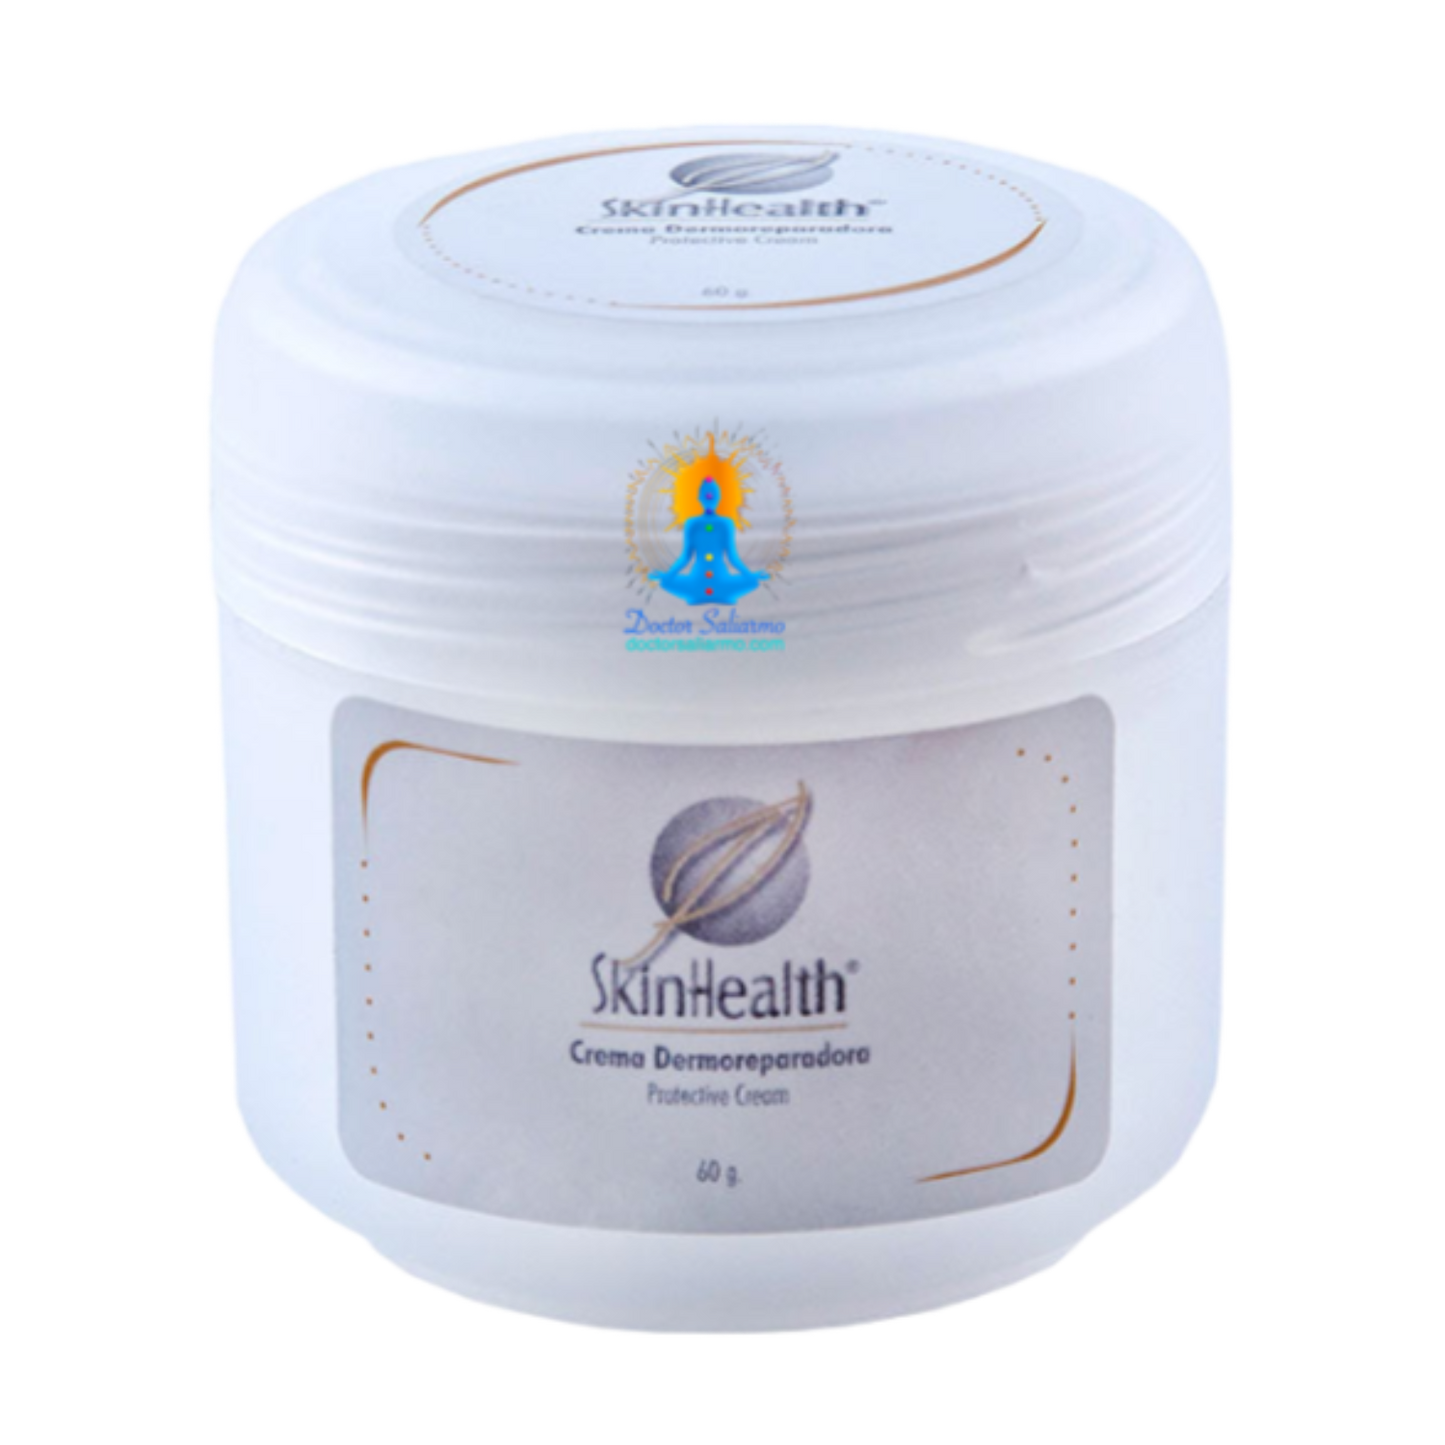 Crema Dermoreparadora regenera piel, protege de agresiones, antioxidante, cicatrizante, antiséptico y antiinflamatorio.